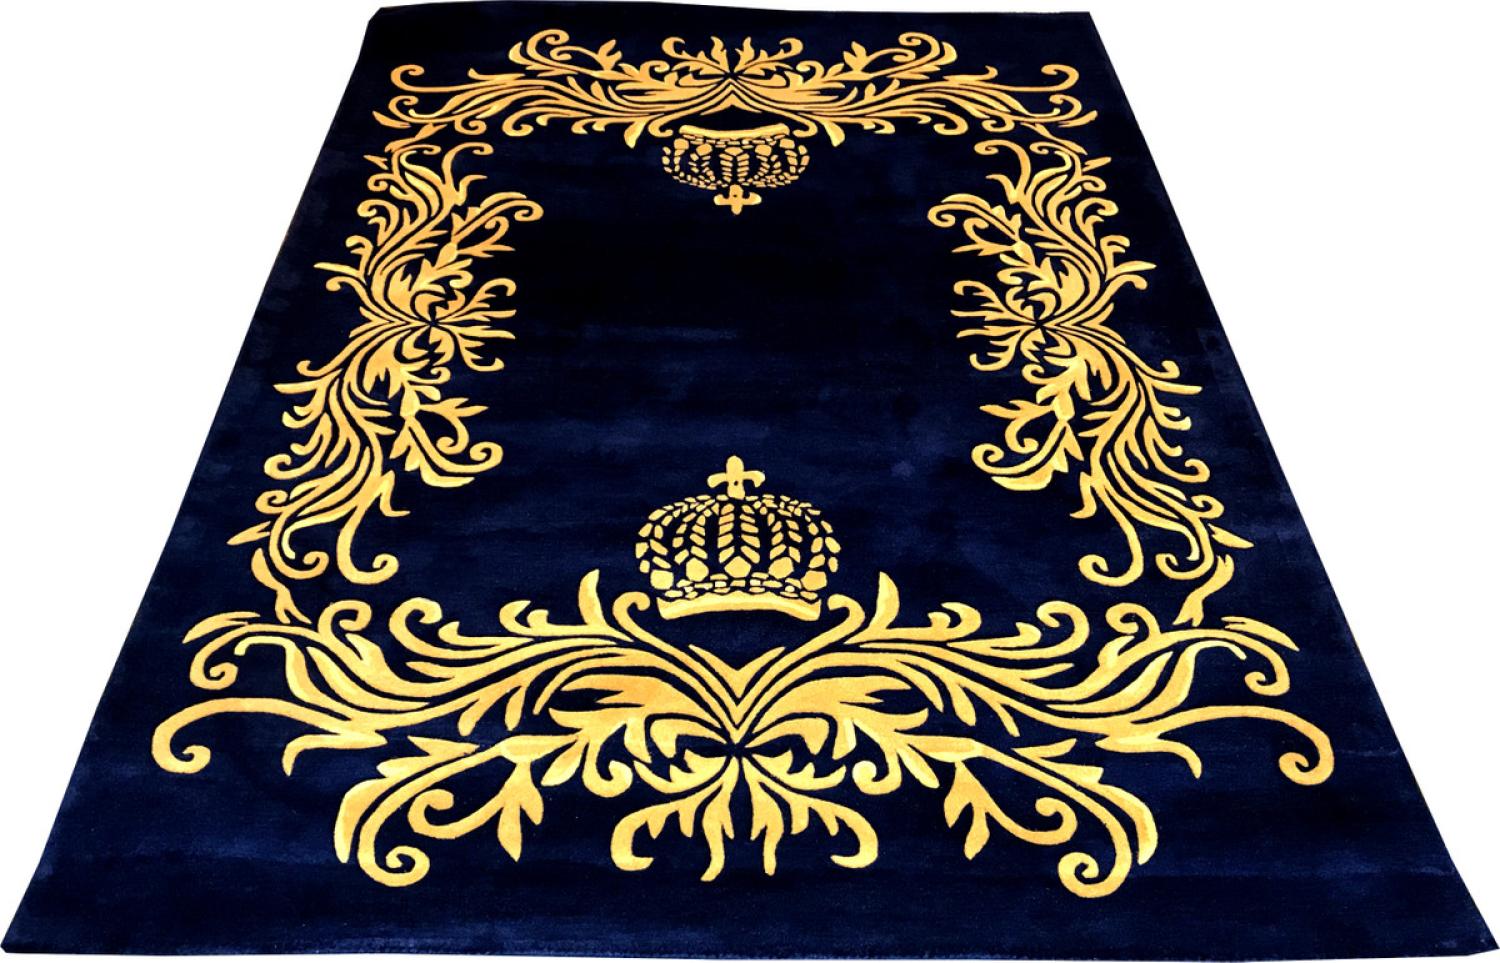 Pompöös by Casa Padrino Luxus Teppich von Harald Glööckler 80 x 150 cm Krone Royalblau / Gold - Barock Design Teppich - Handgewebt aus Wolle Bild 1